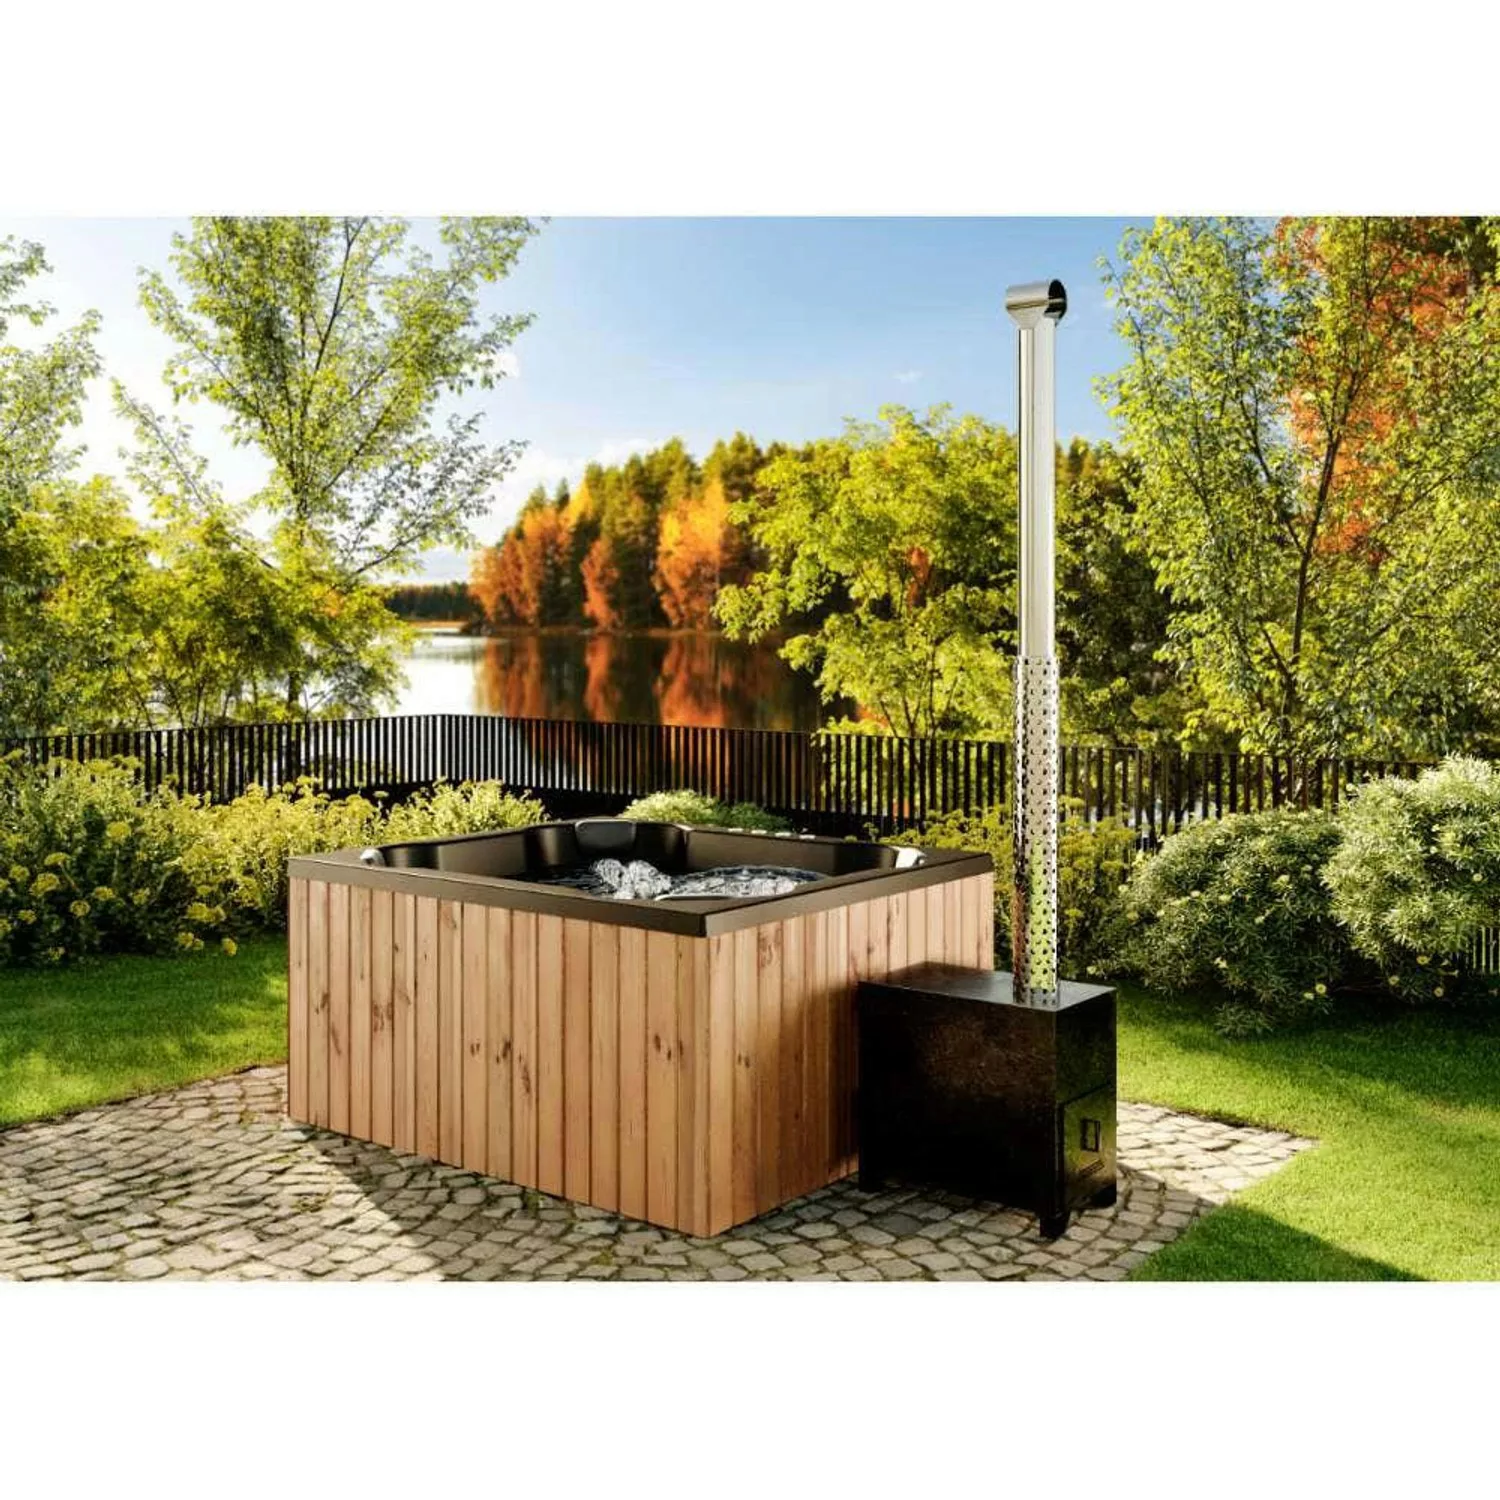 Finntherm Holz Badefass Oslo Thermoholz Whirlpool 170x200 cm Alu-Außenofen günstig online kaufen